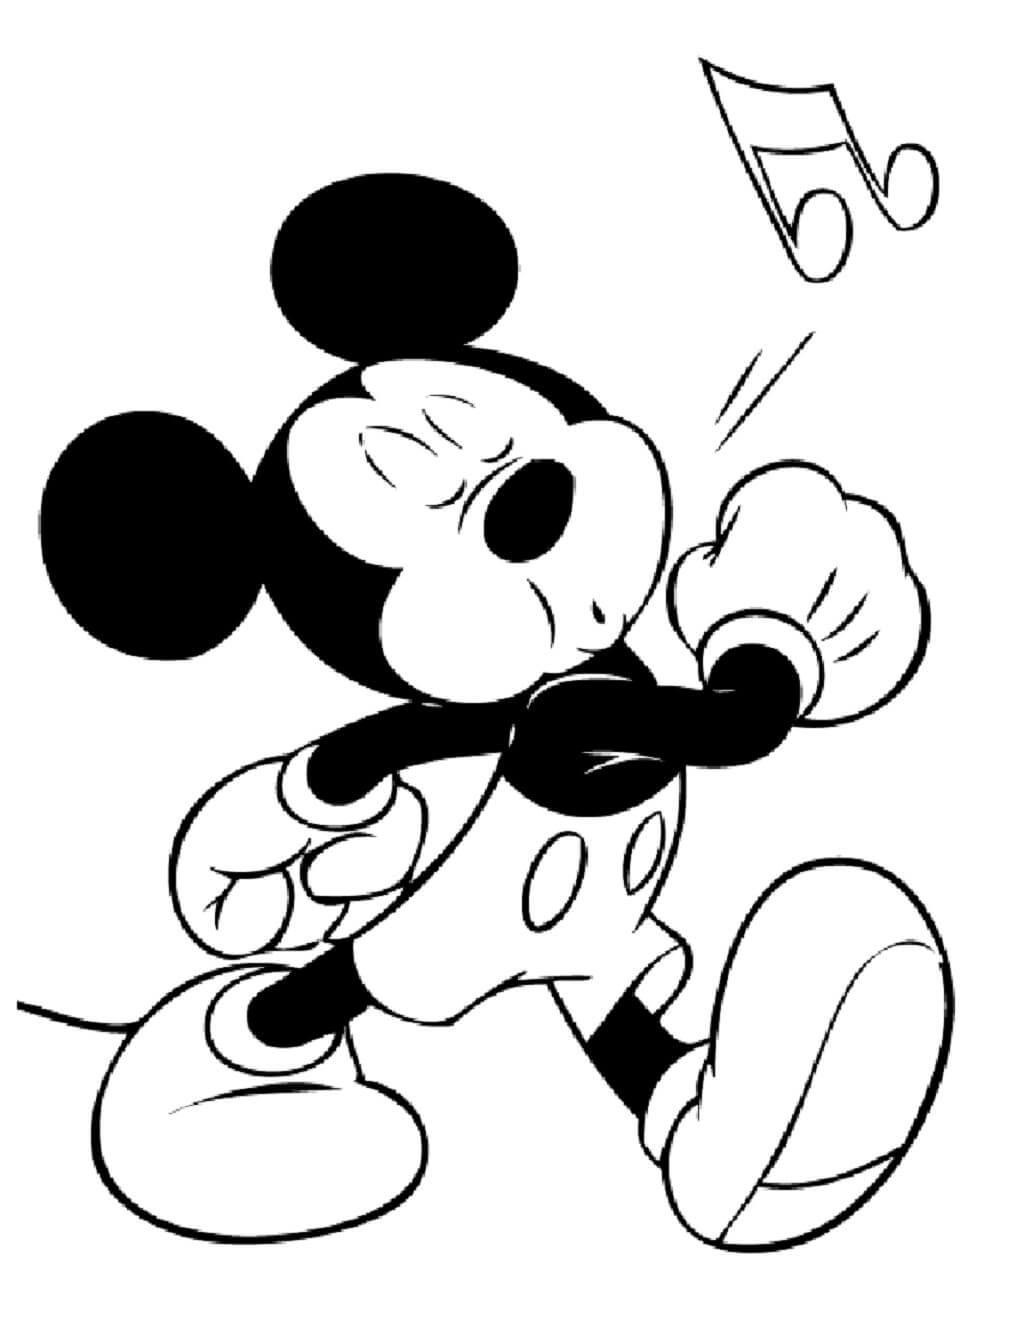 Mickey Mouse speelt fluit tijdens het lopen